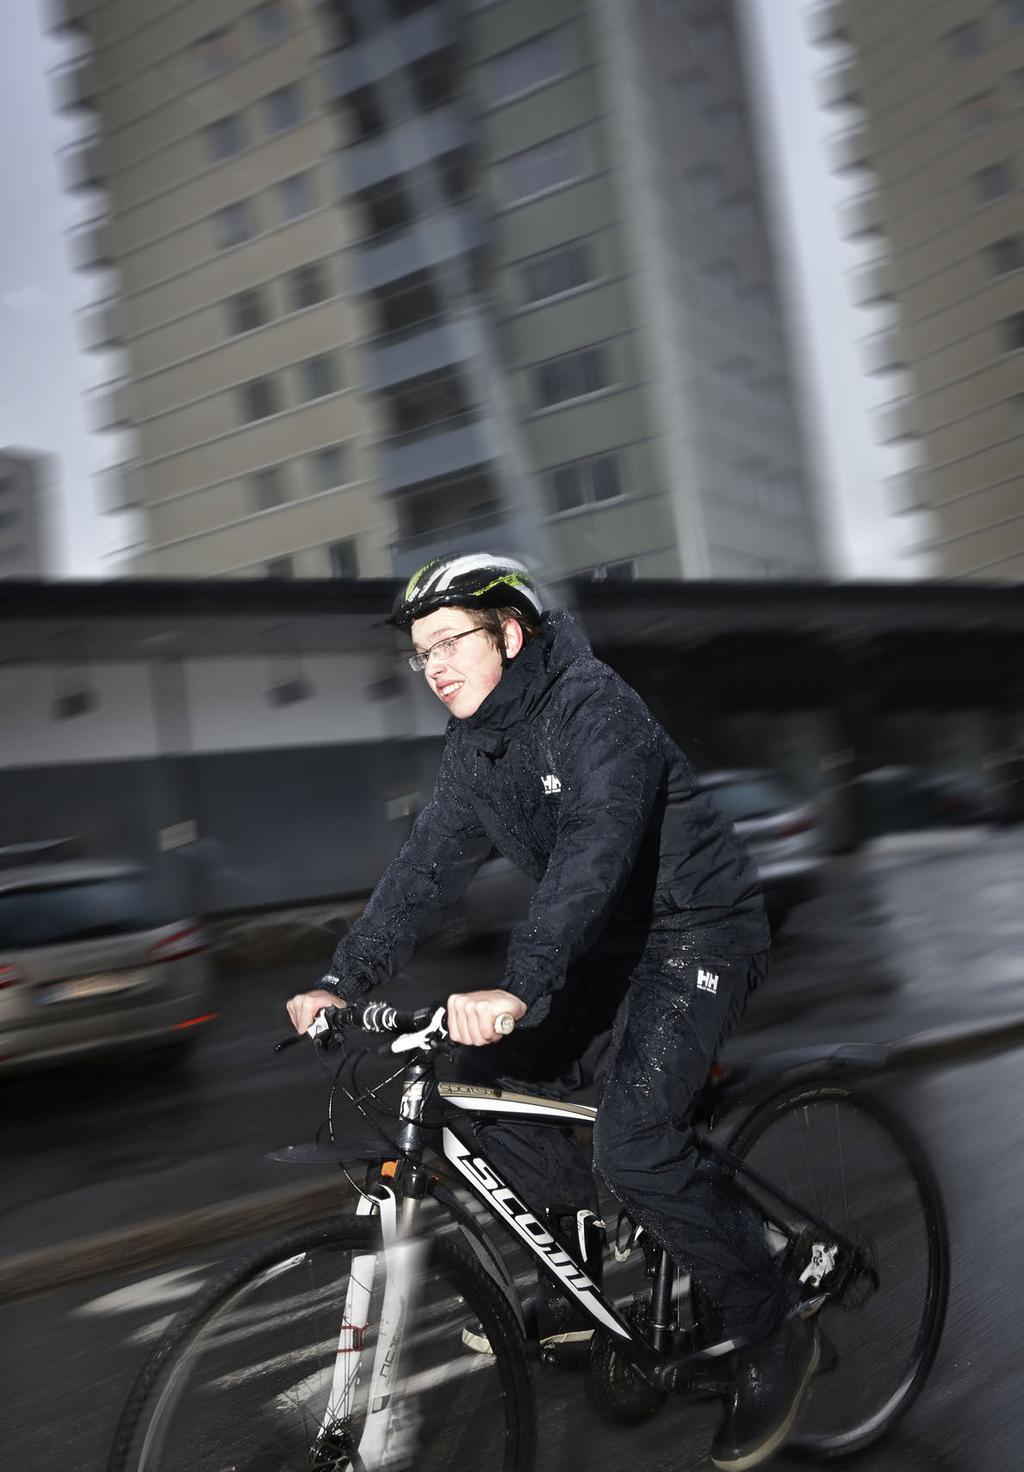 Stol på eigne krefter. Sykkel kan nyttast både til sport, fritid og transport.